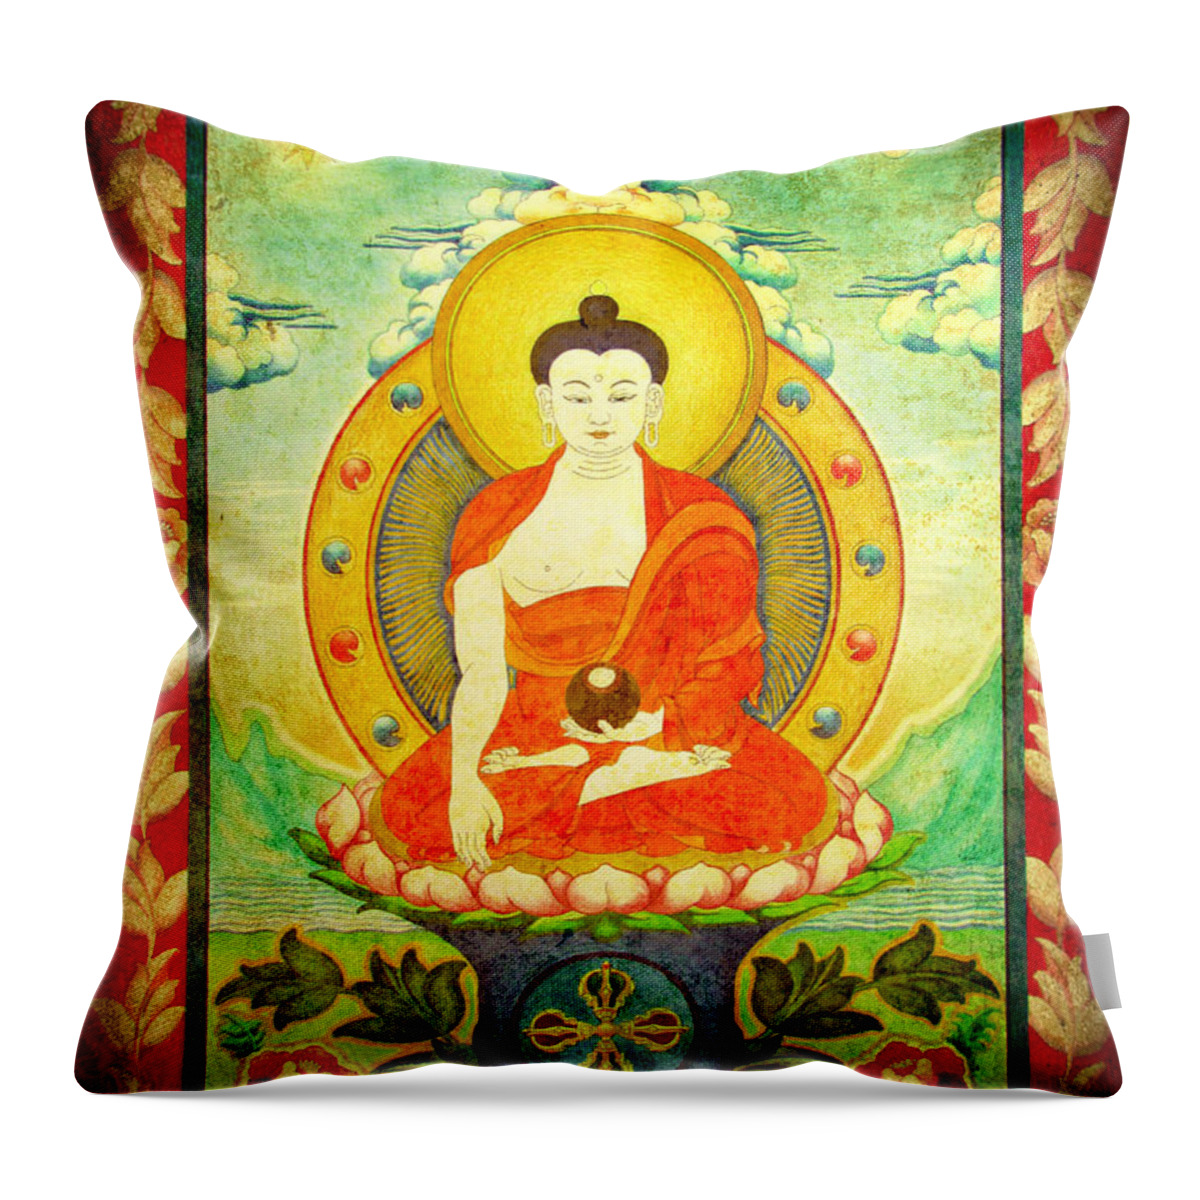 Shakyamuni Buddha Throw Pillow featuring the digital art Shakyamuni Buddha Thangka by Alexa Szlavics